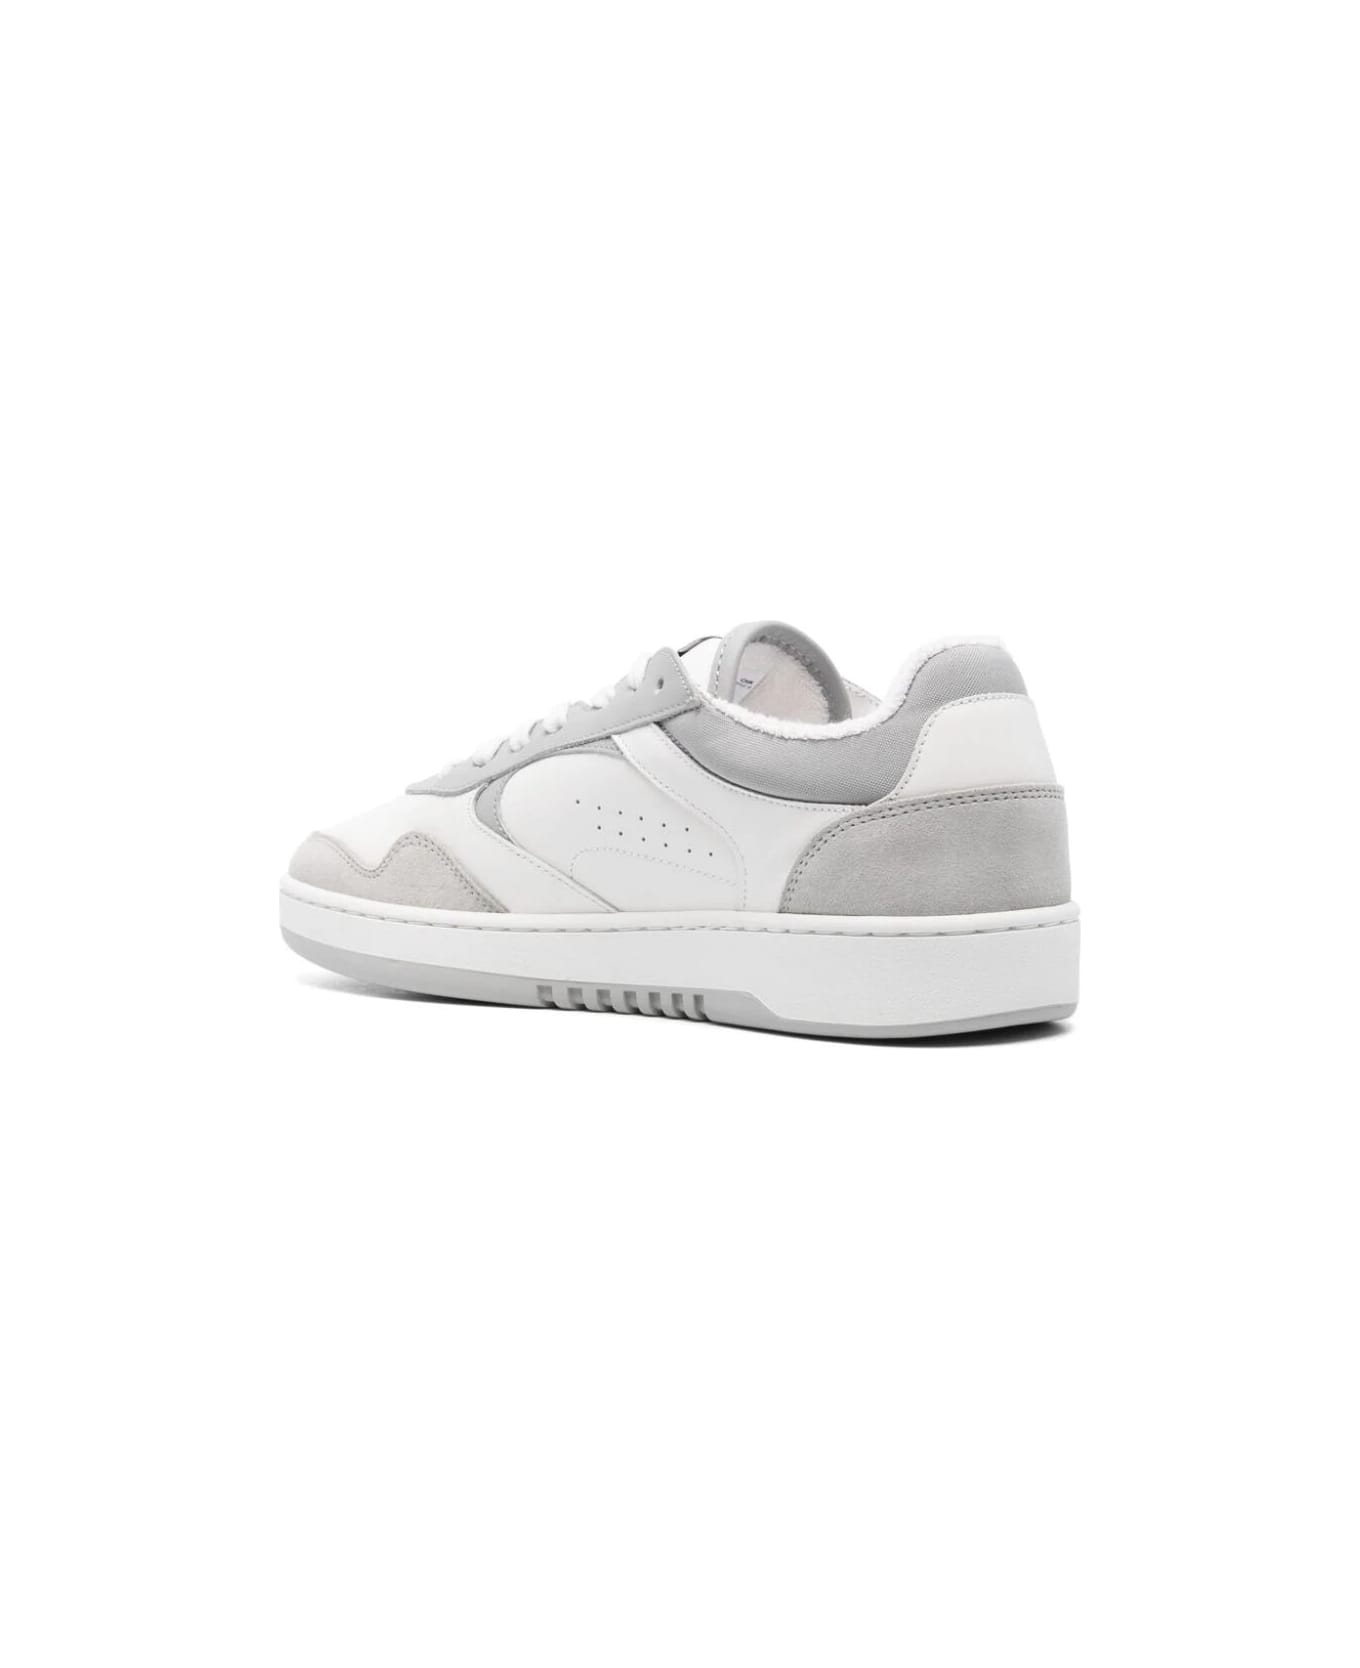 Axel Arigato Arlo Sneaker - White Light Grey スニーカー